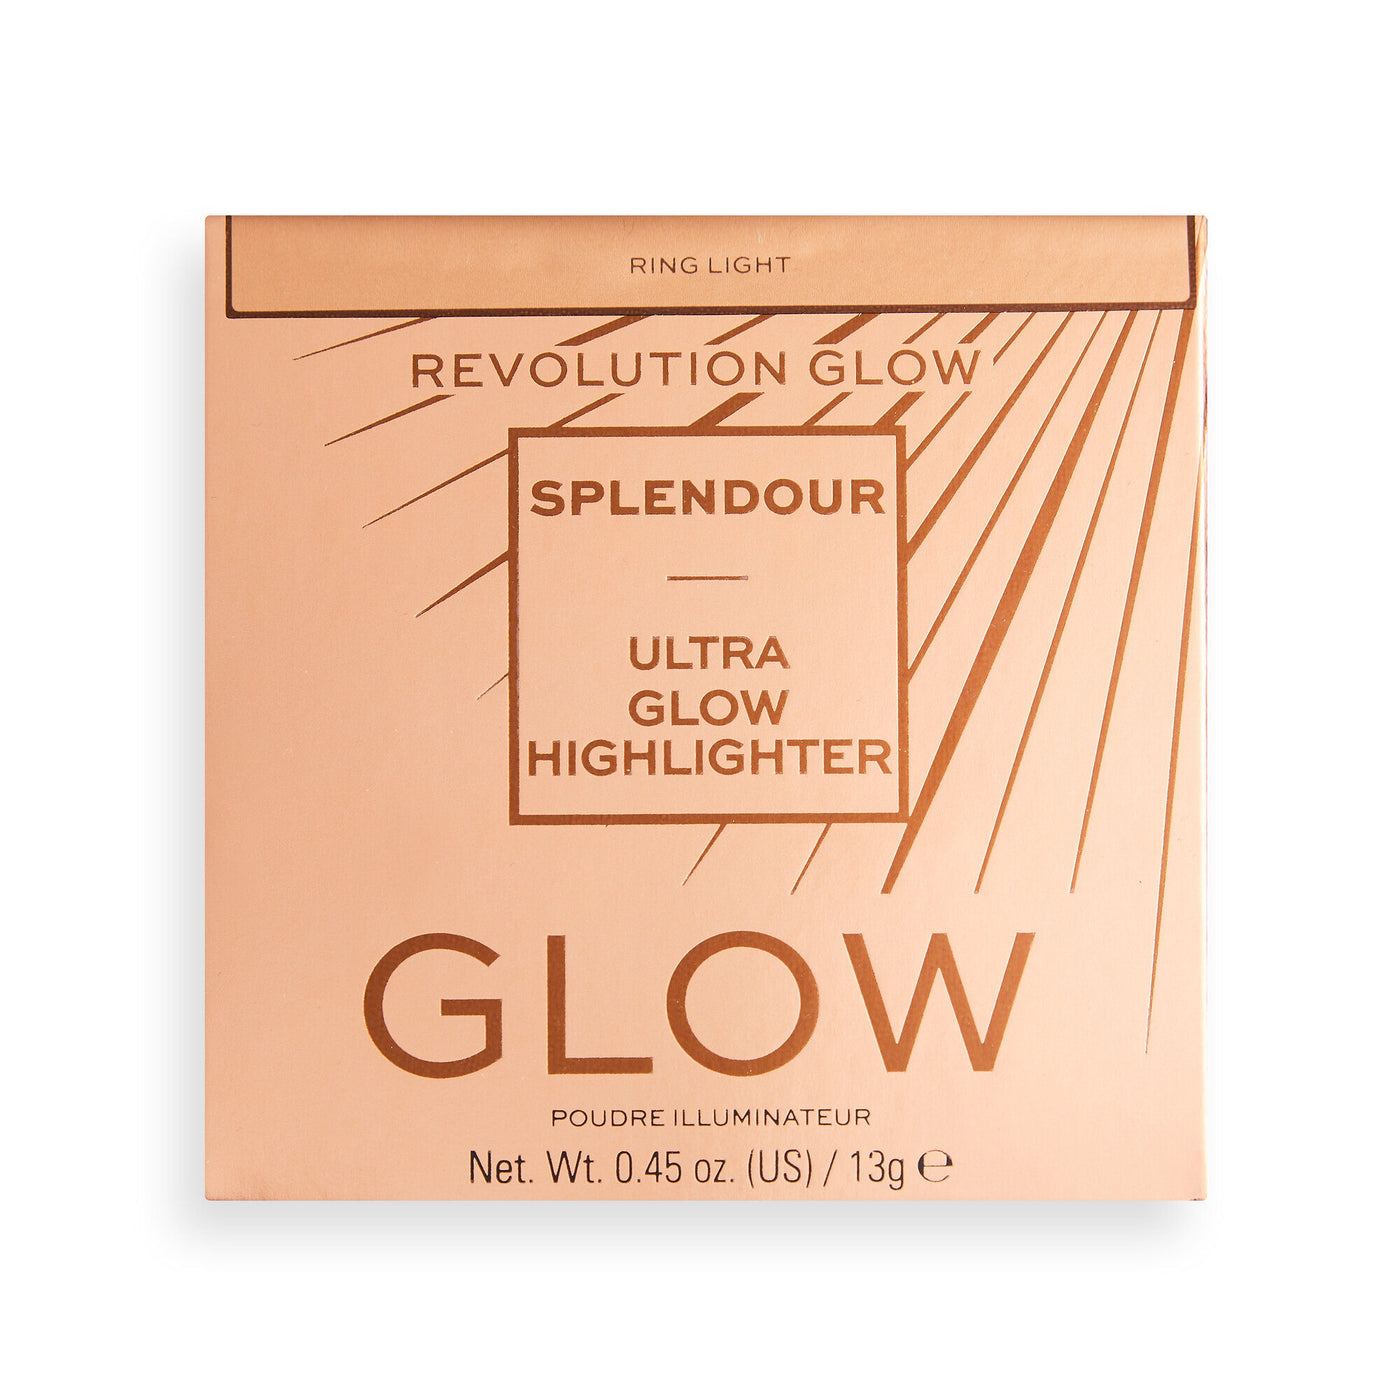 Revolution Glow Splendour Highlighter Ring Light